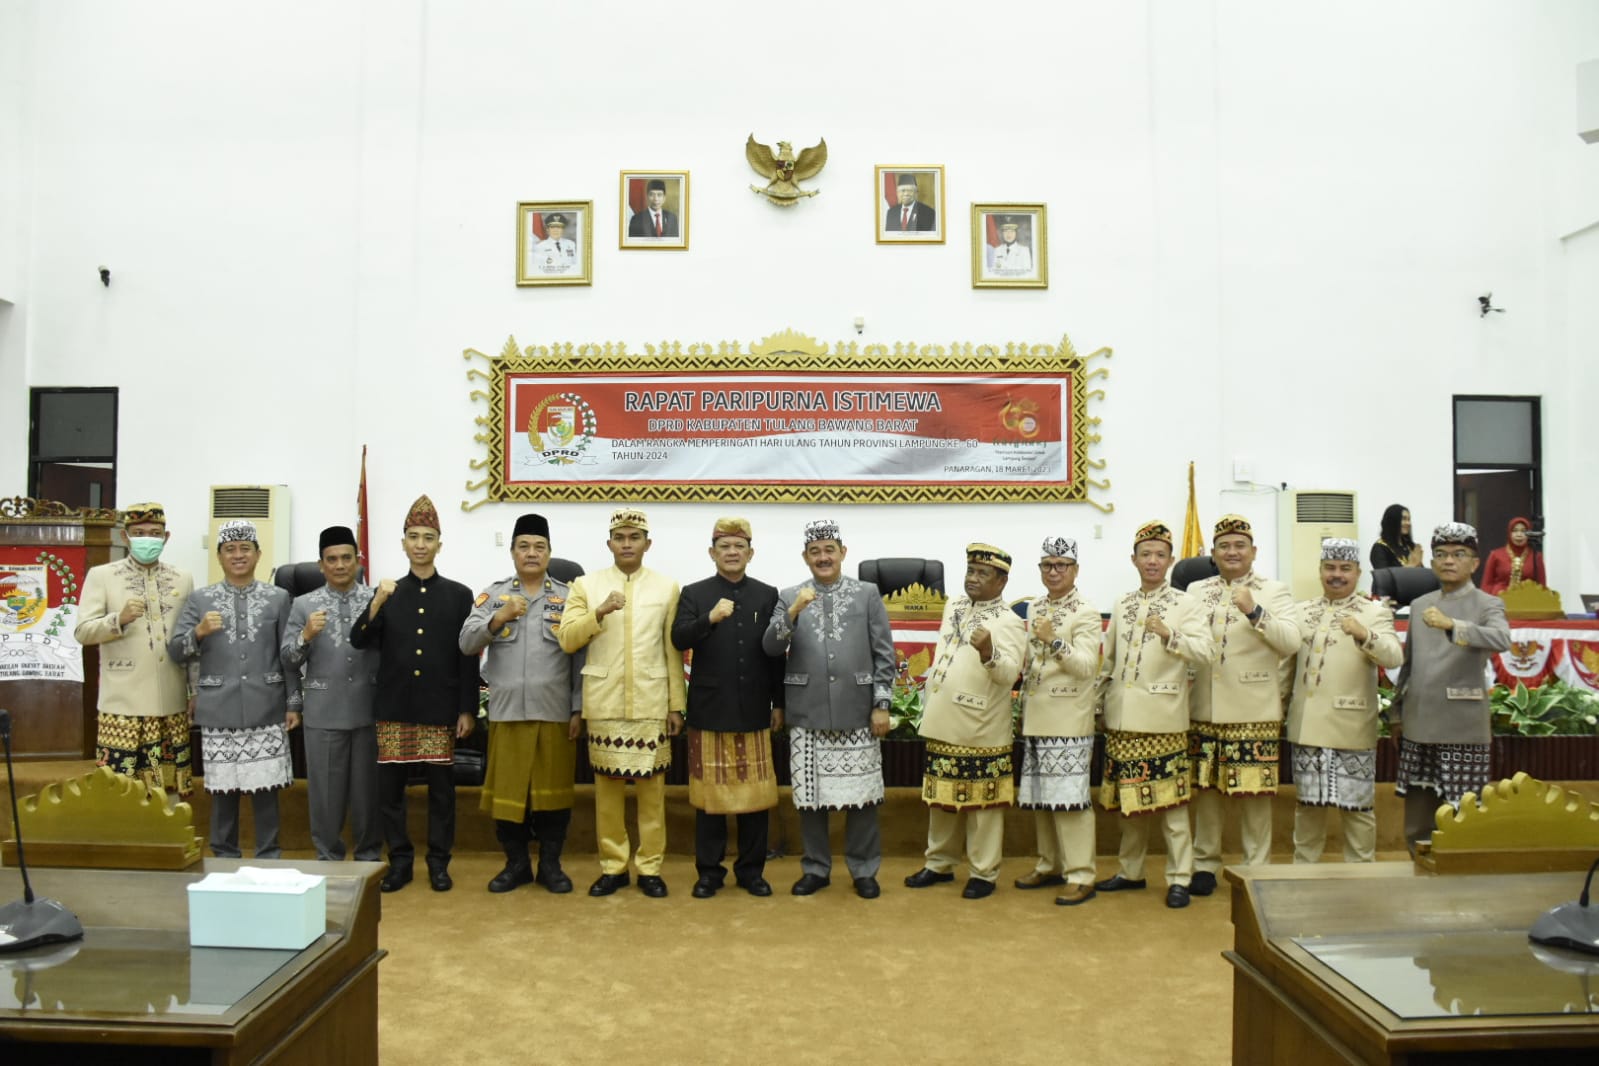 M. Firsada Bacakan Sambutan Gubernur Lampung  Saat Rapat Paripurna Istimewa HUT Ke-60 Provinsi Lampung